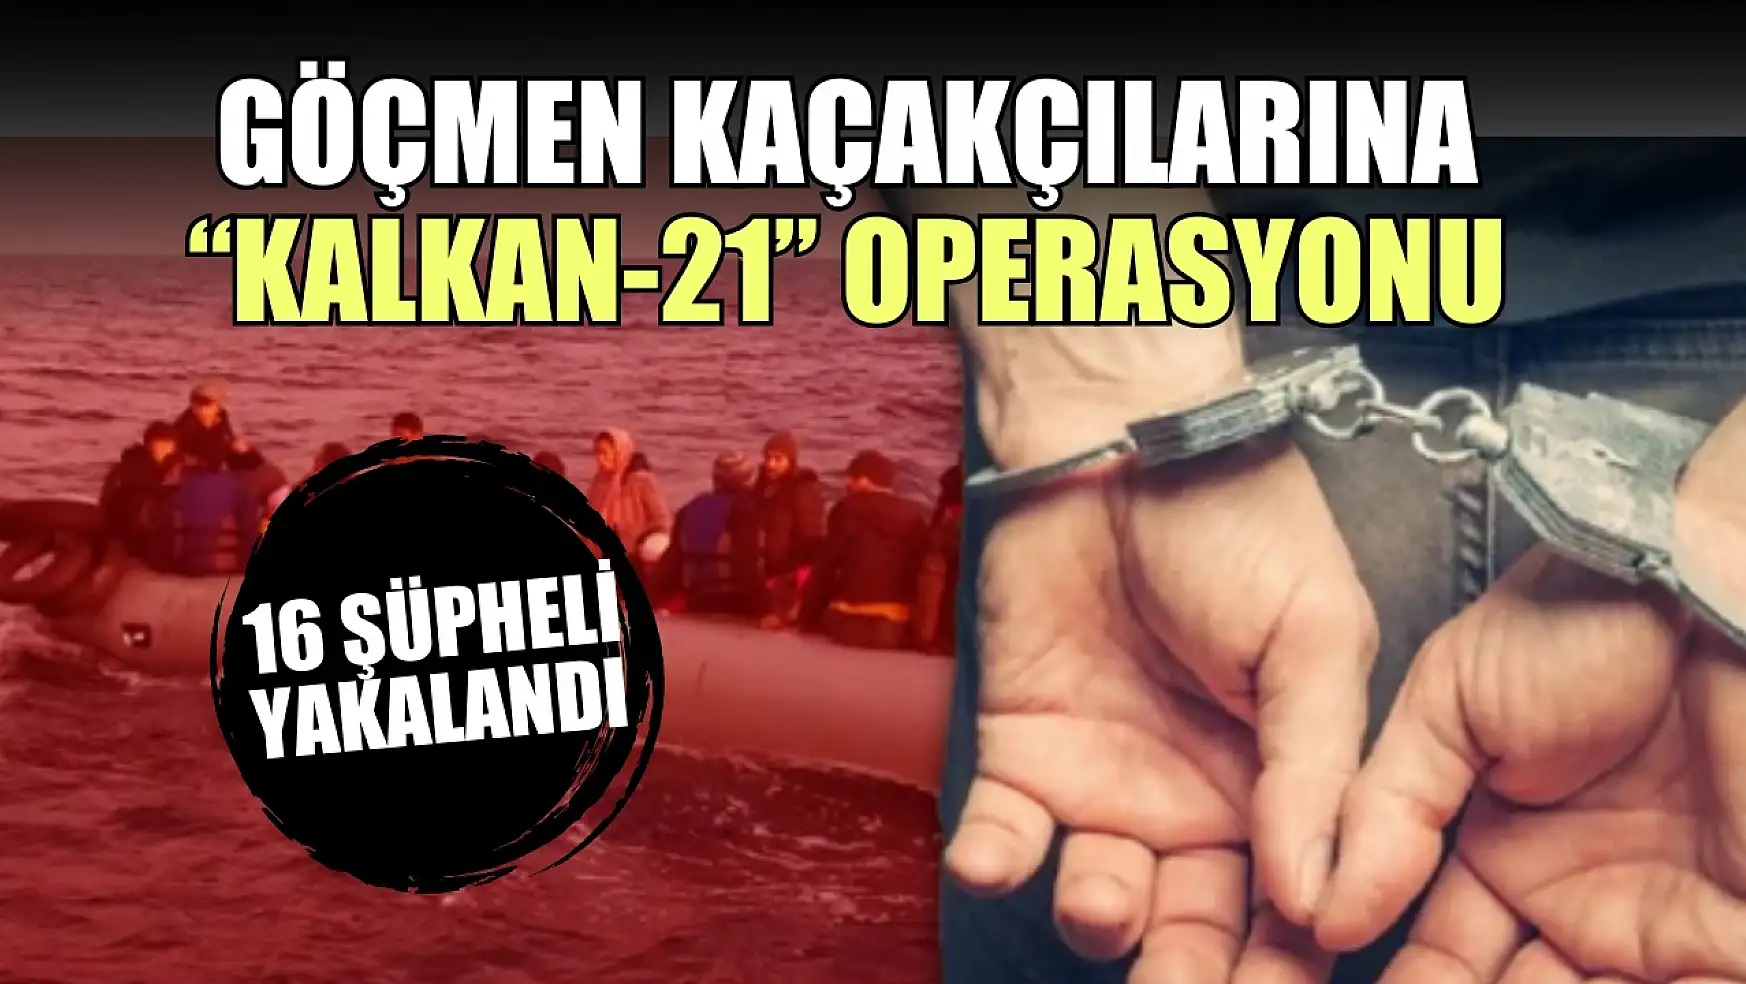 Göçmen kaçakçılarına 'Kalkan-21' operasyonu: 16 şüpheli yakalandı